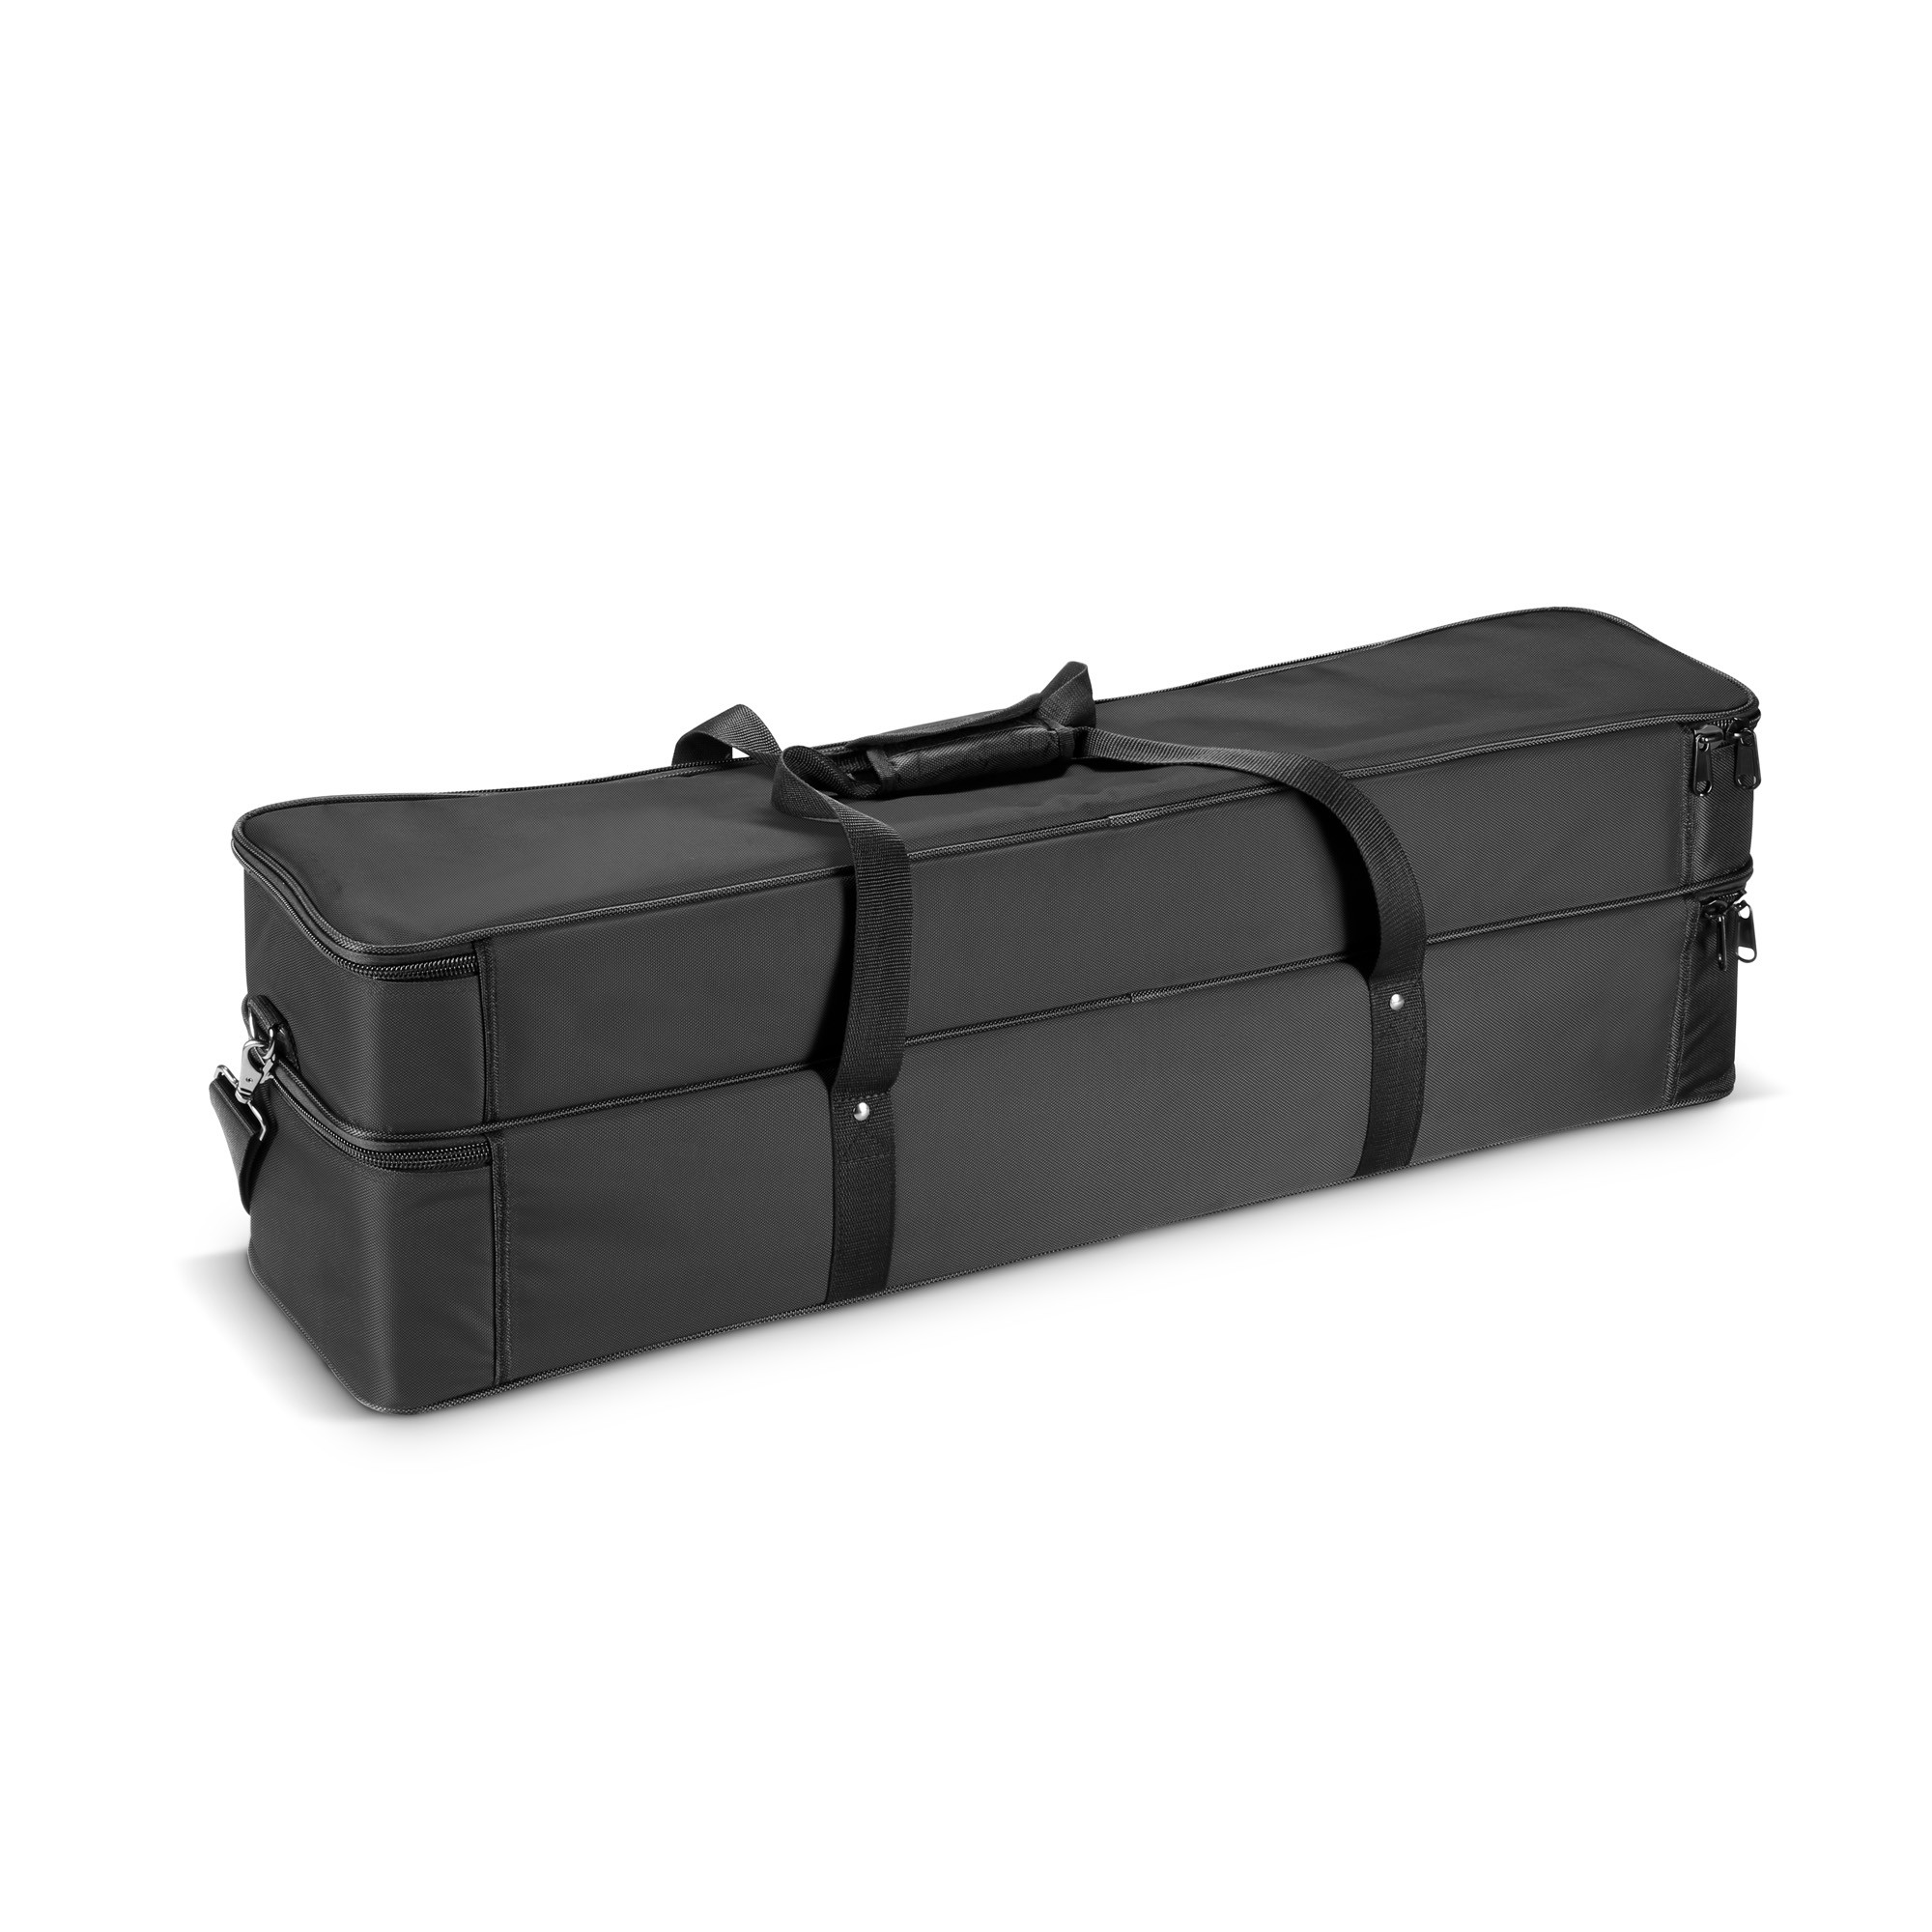 Ld Systems Curv 500 Ts Sat Bag - Funda para altavoz y bafle de bajos - Variation 3